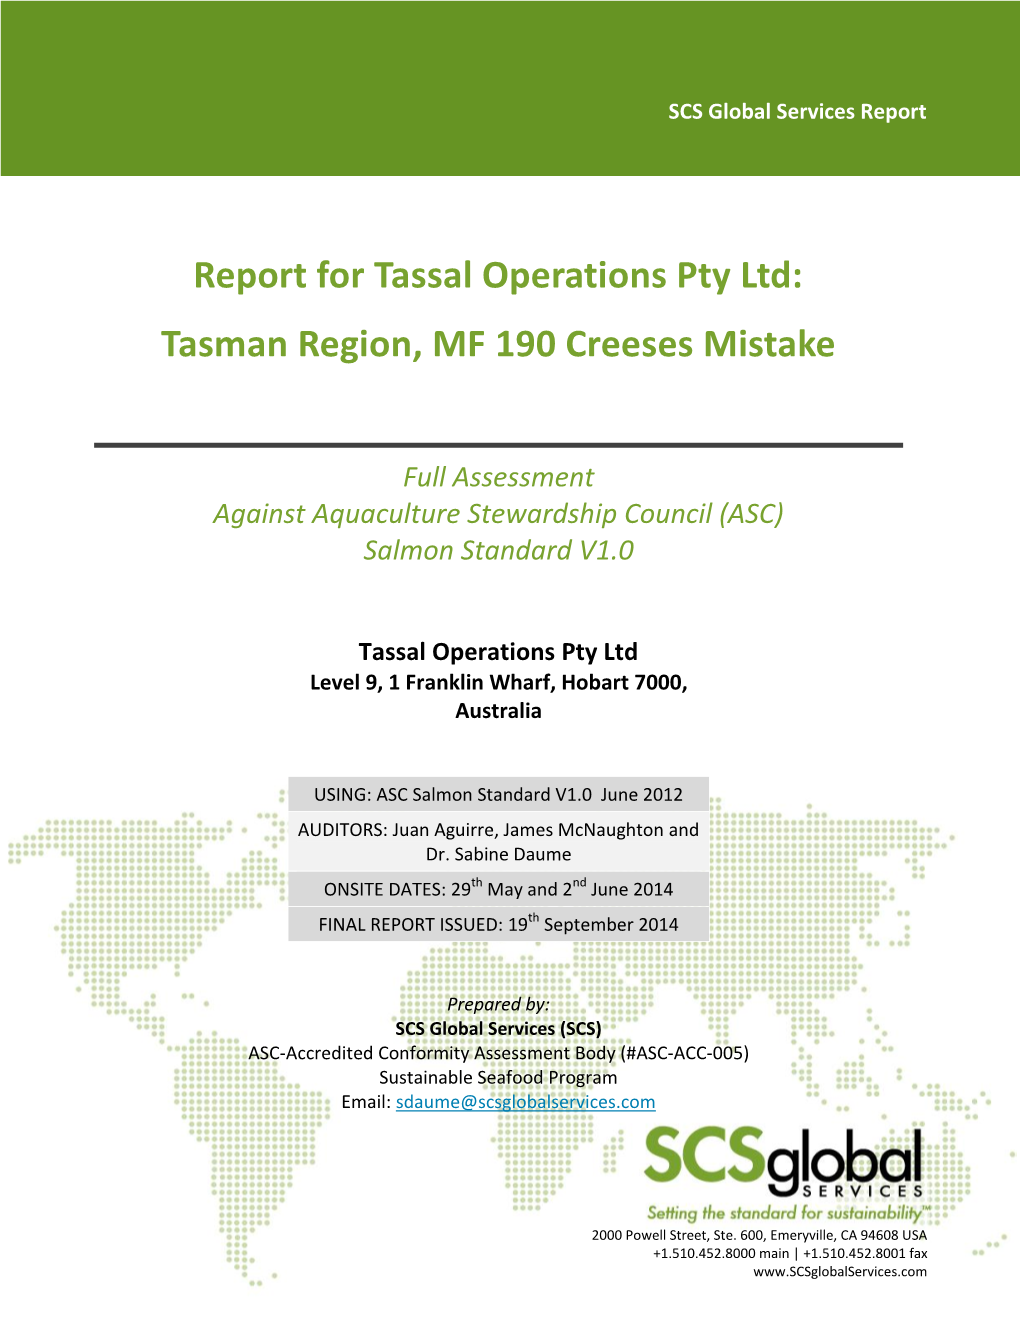 Report for Tassal Operations Pty Ltd: Tasman Region, MF 190 Creeses Mistake